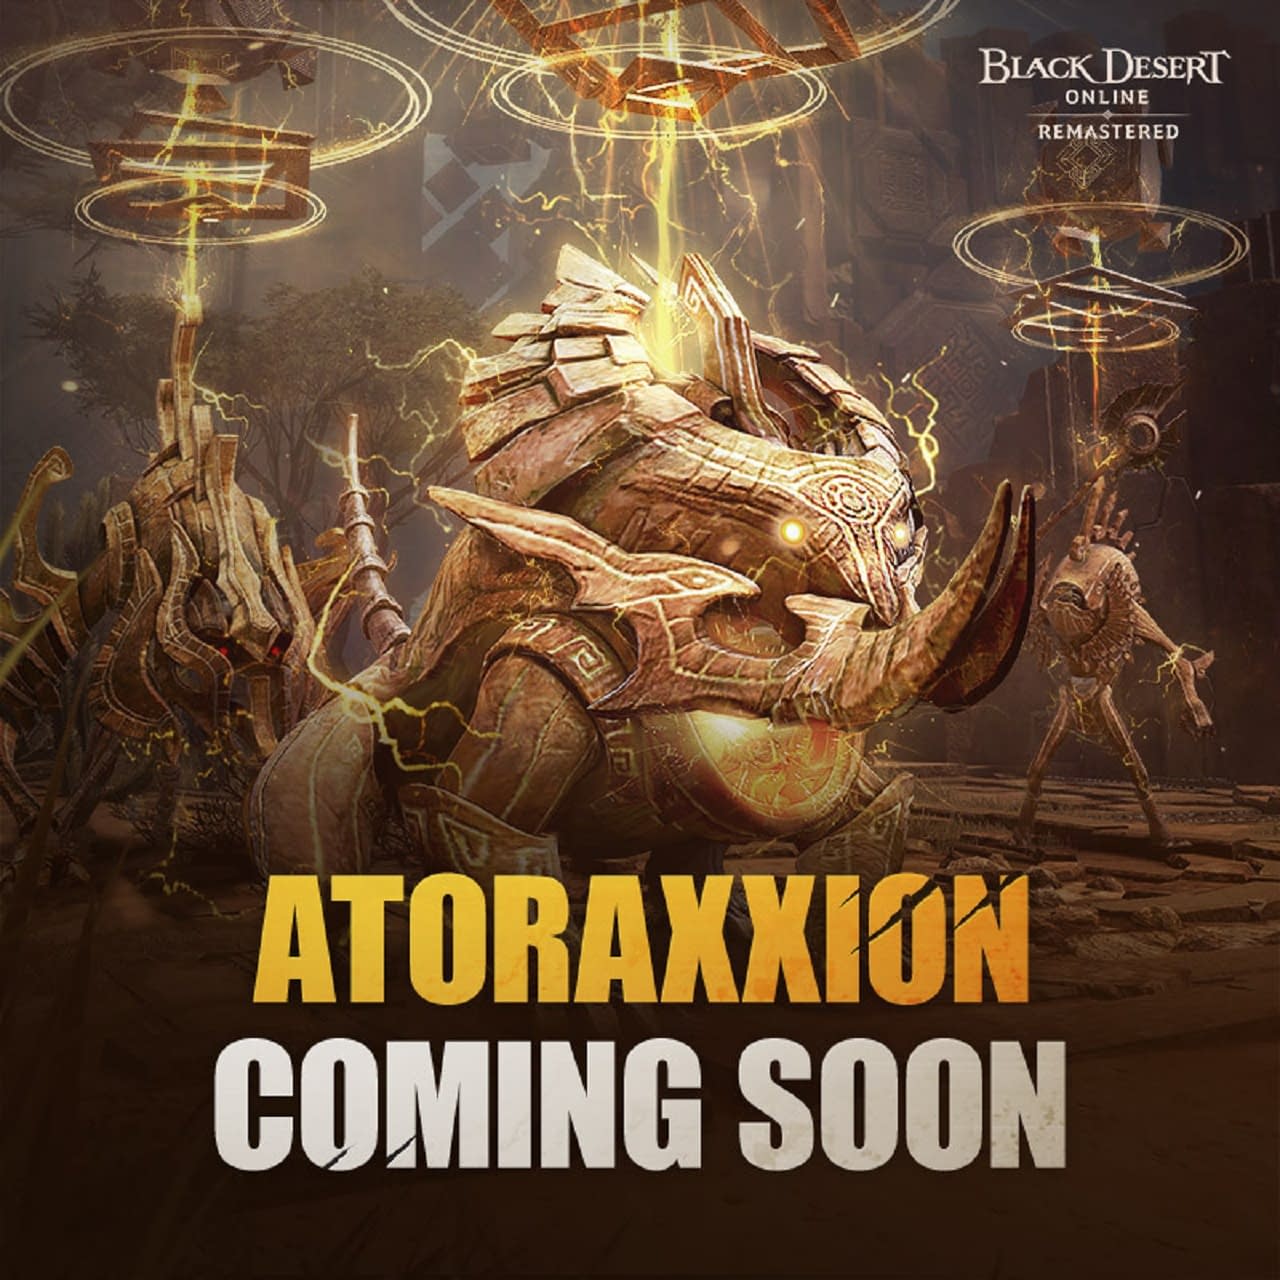 Black Desert Online Launches The Atoraxxion: Yolunakea Dungeon